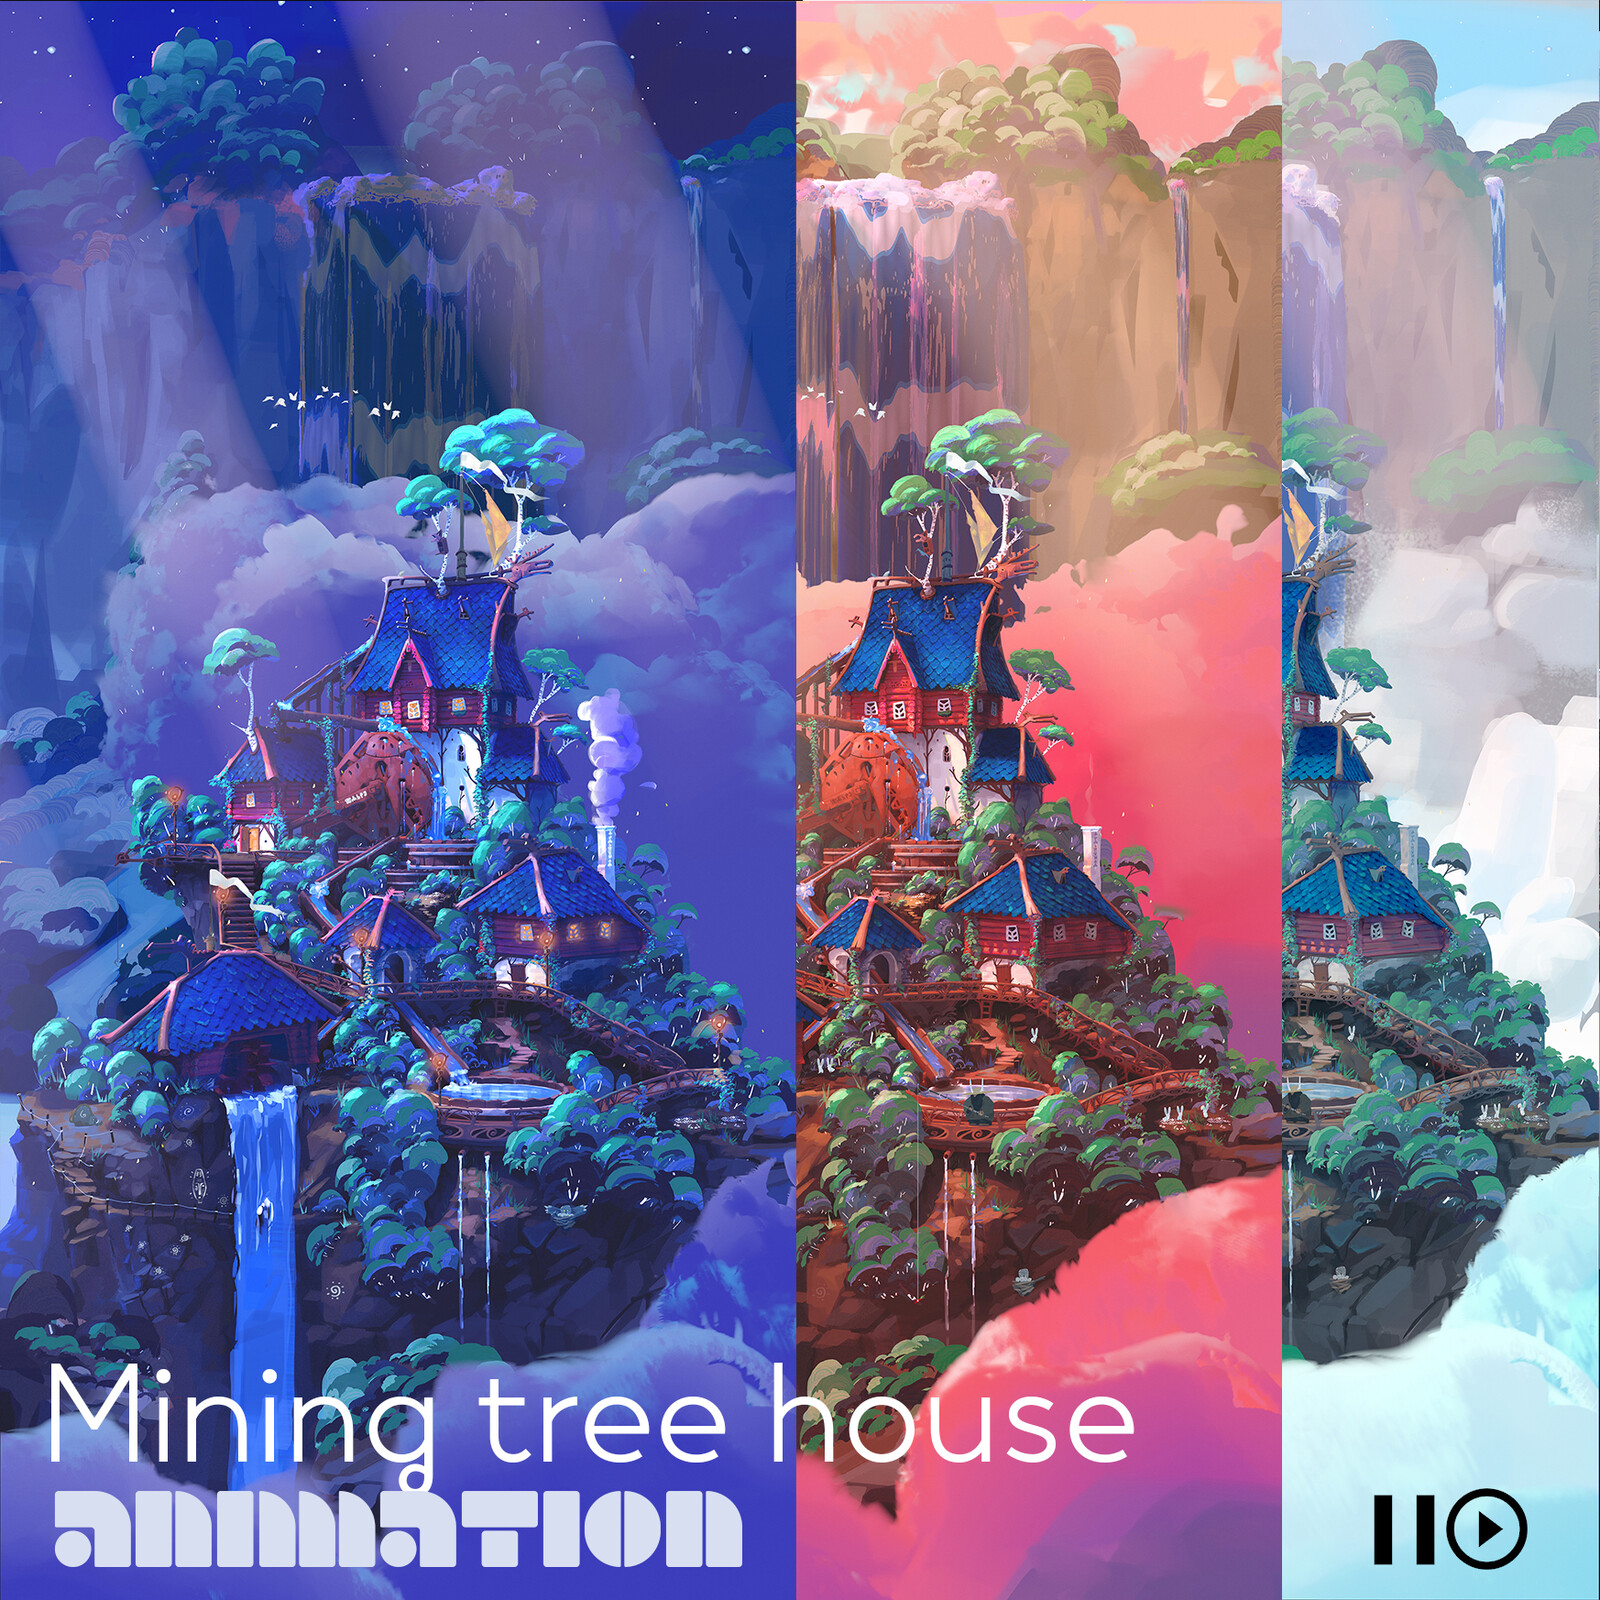 Mining tree house